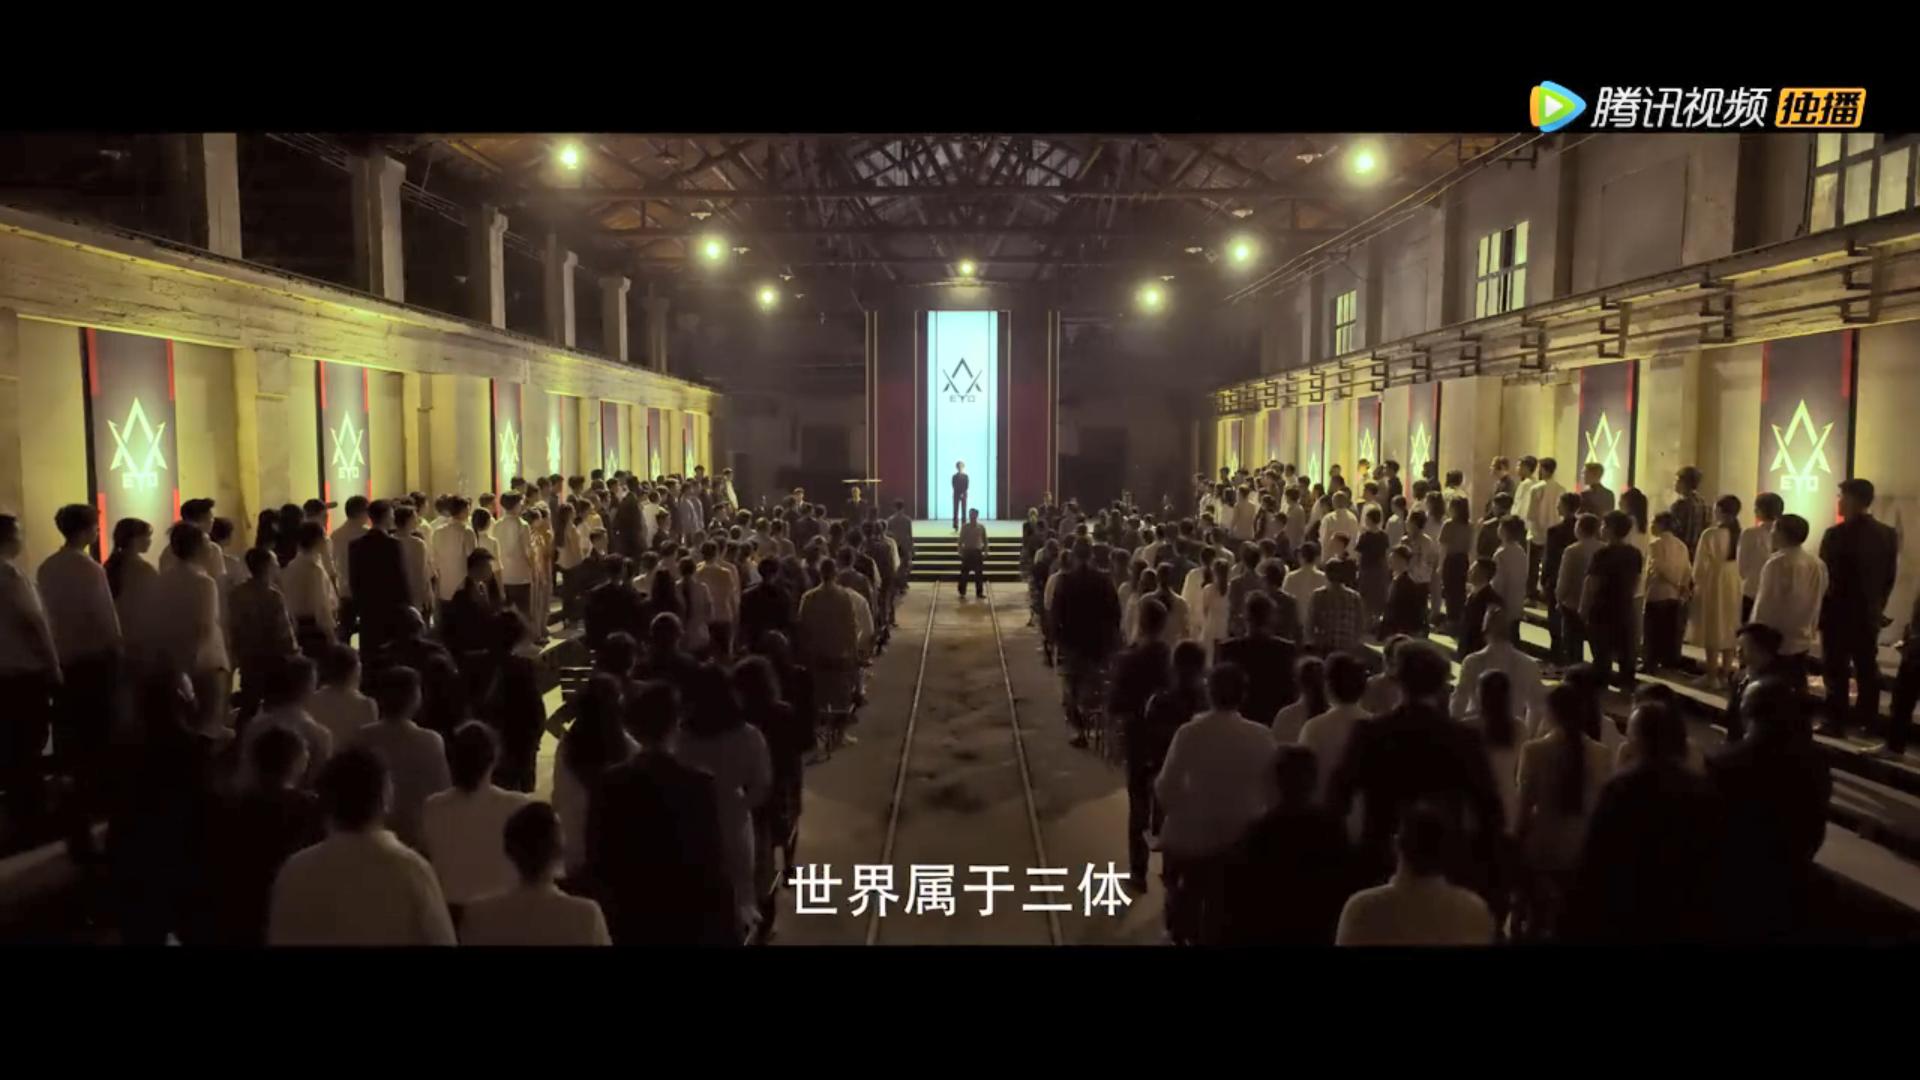 国产电视剧《三体》首爆预告 腾讯视频独播